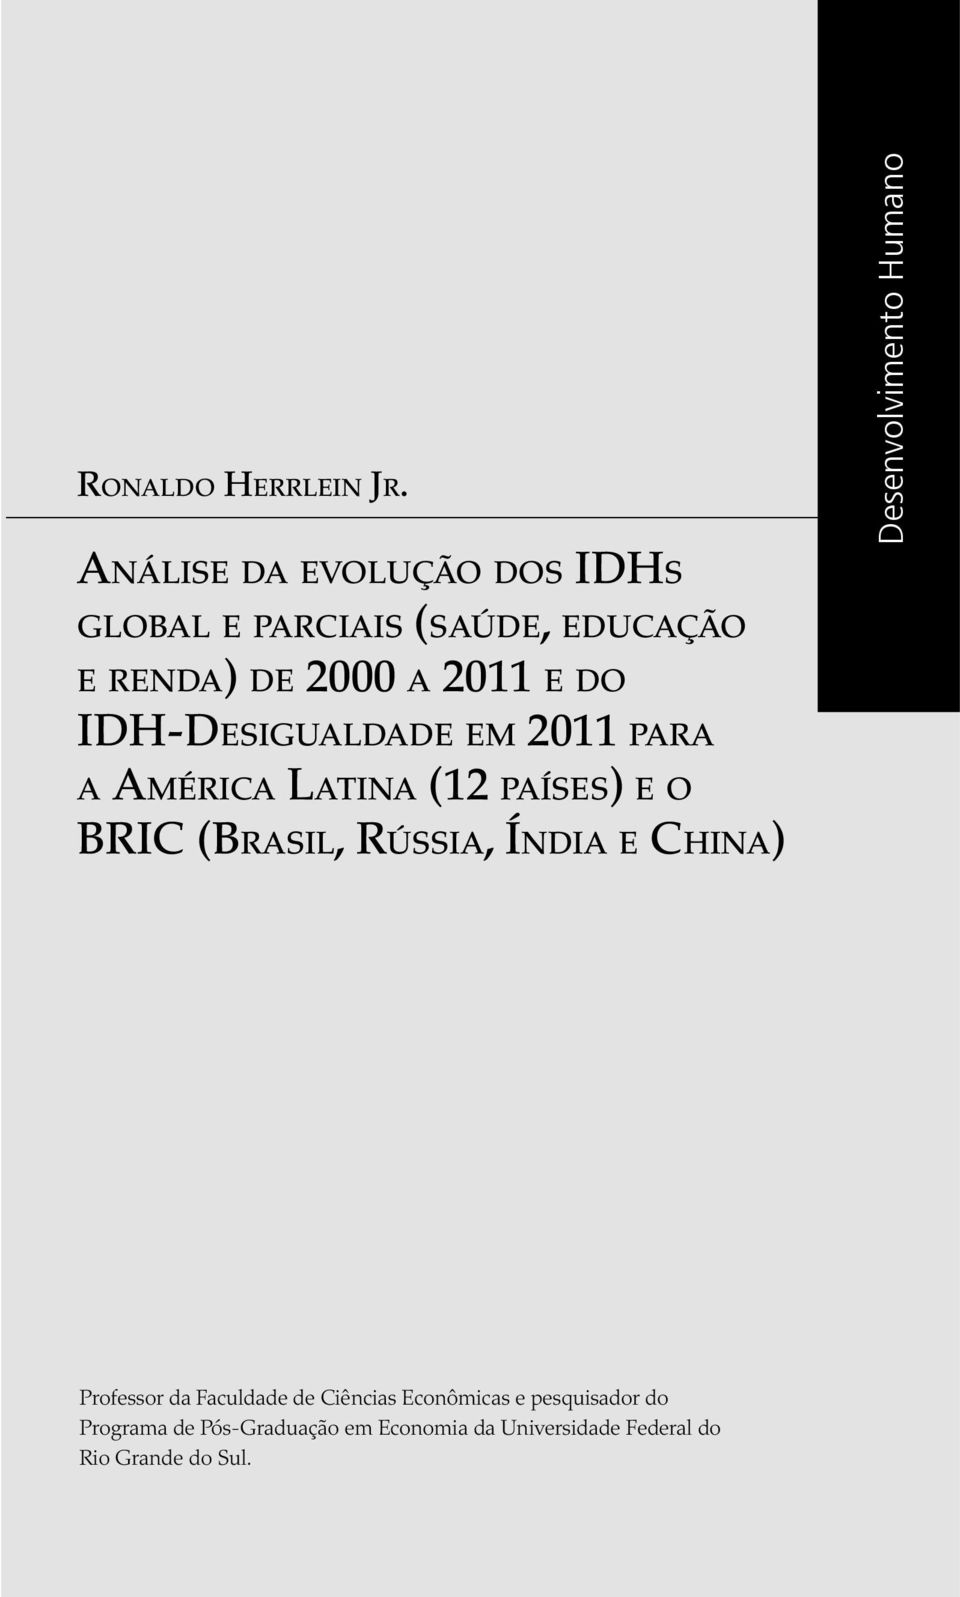 IDH-Desigualdade em 2011 para a América Latina (12 países) e o BRIC (Brasil, Rússia, Índia e